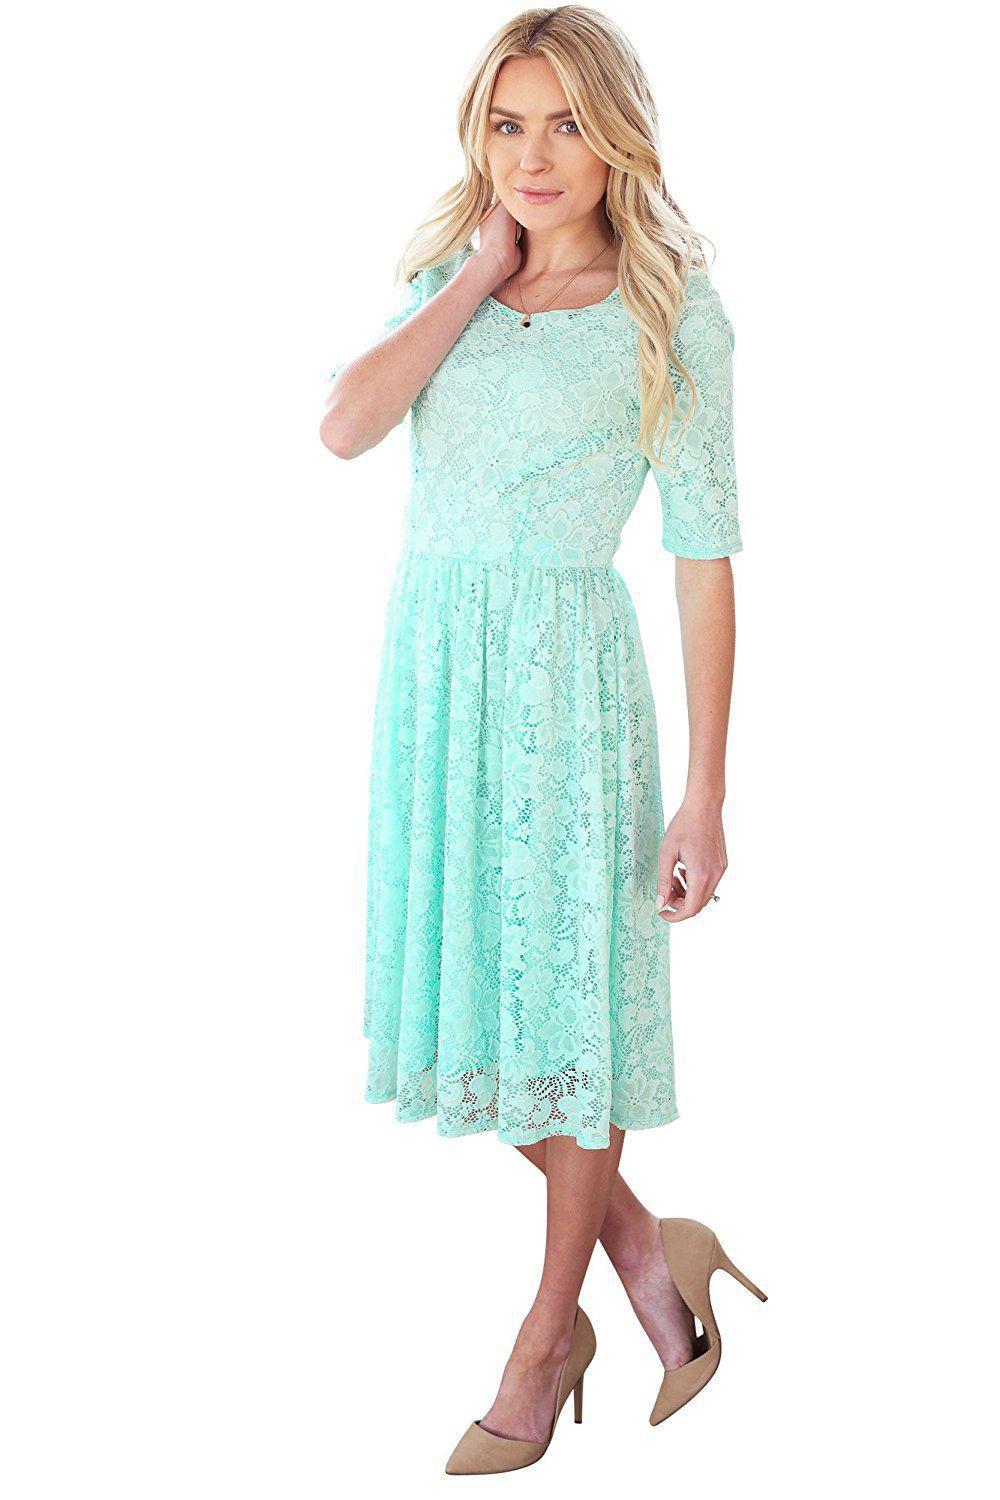 Emmy SeaFoam Bridesmaids Dress modest lace plus size cheap